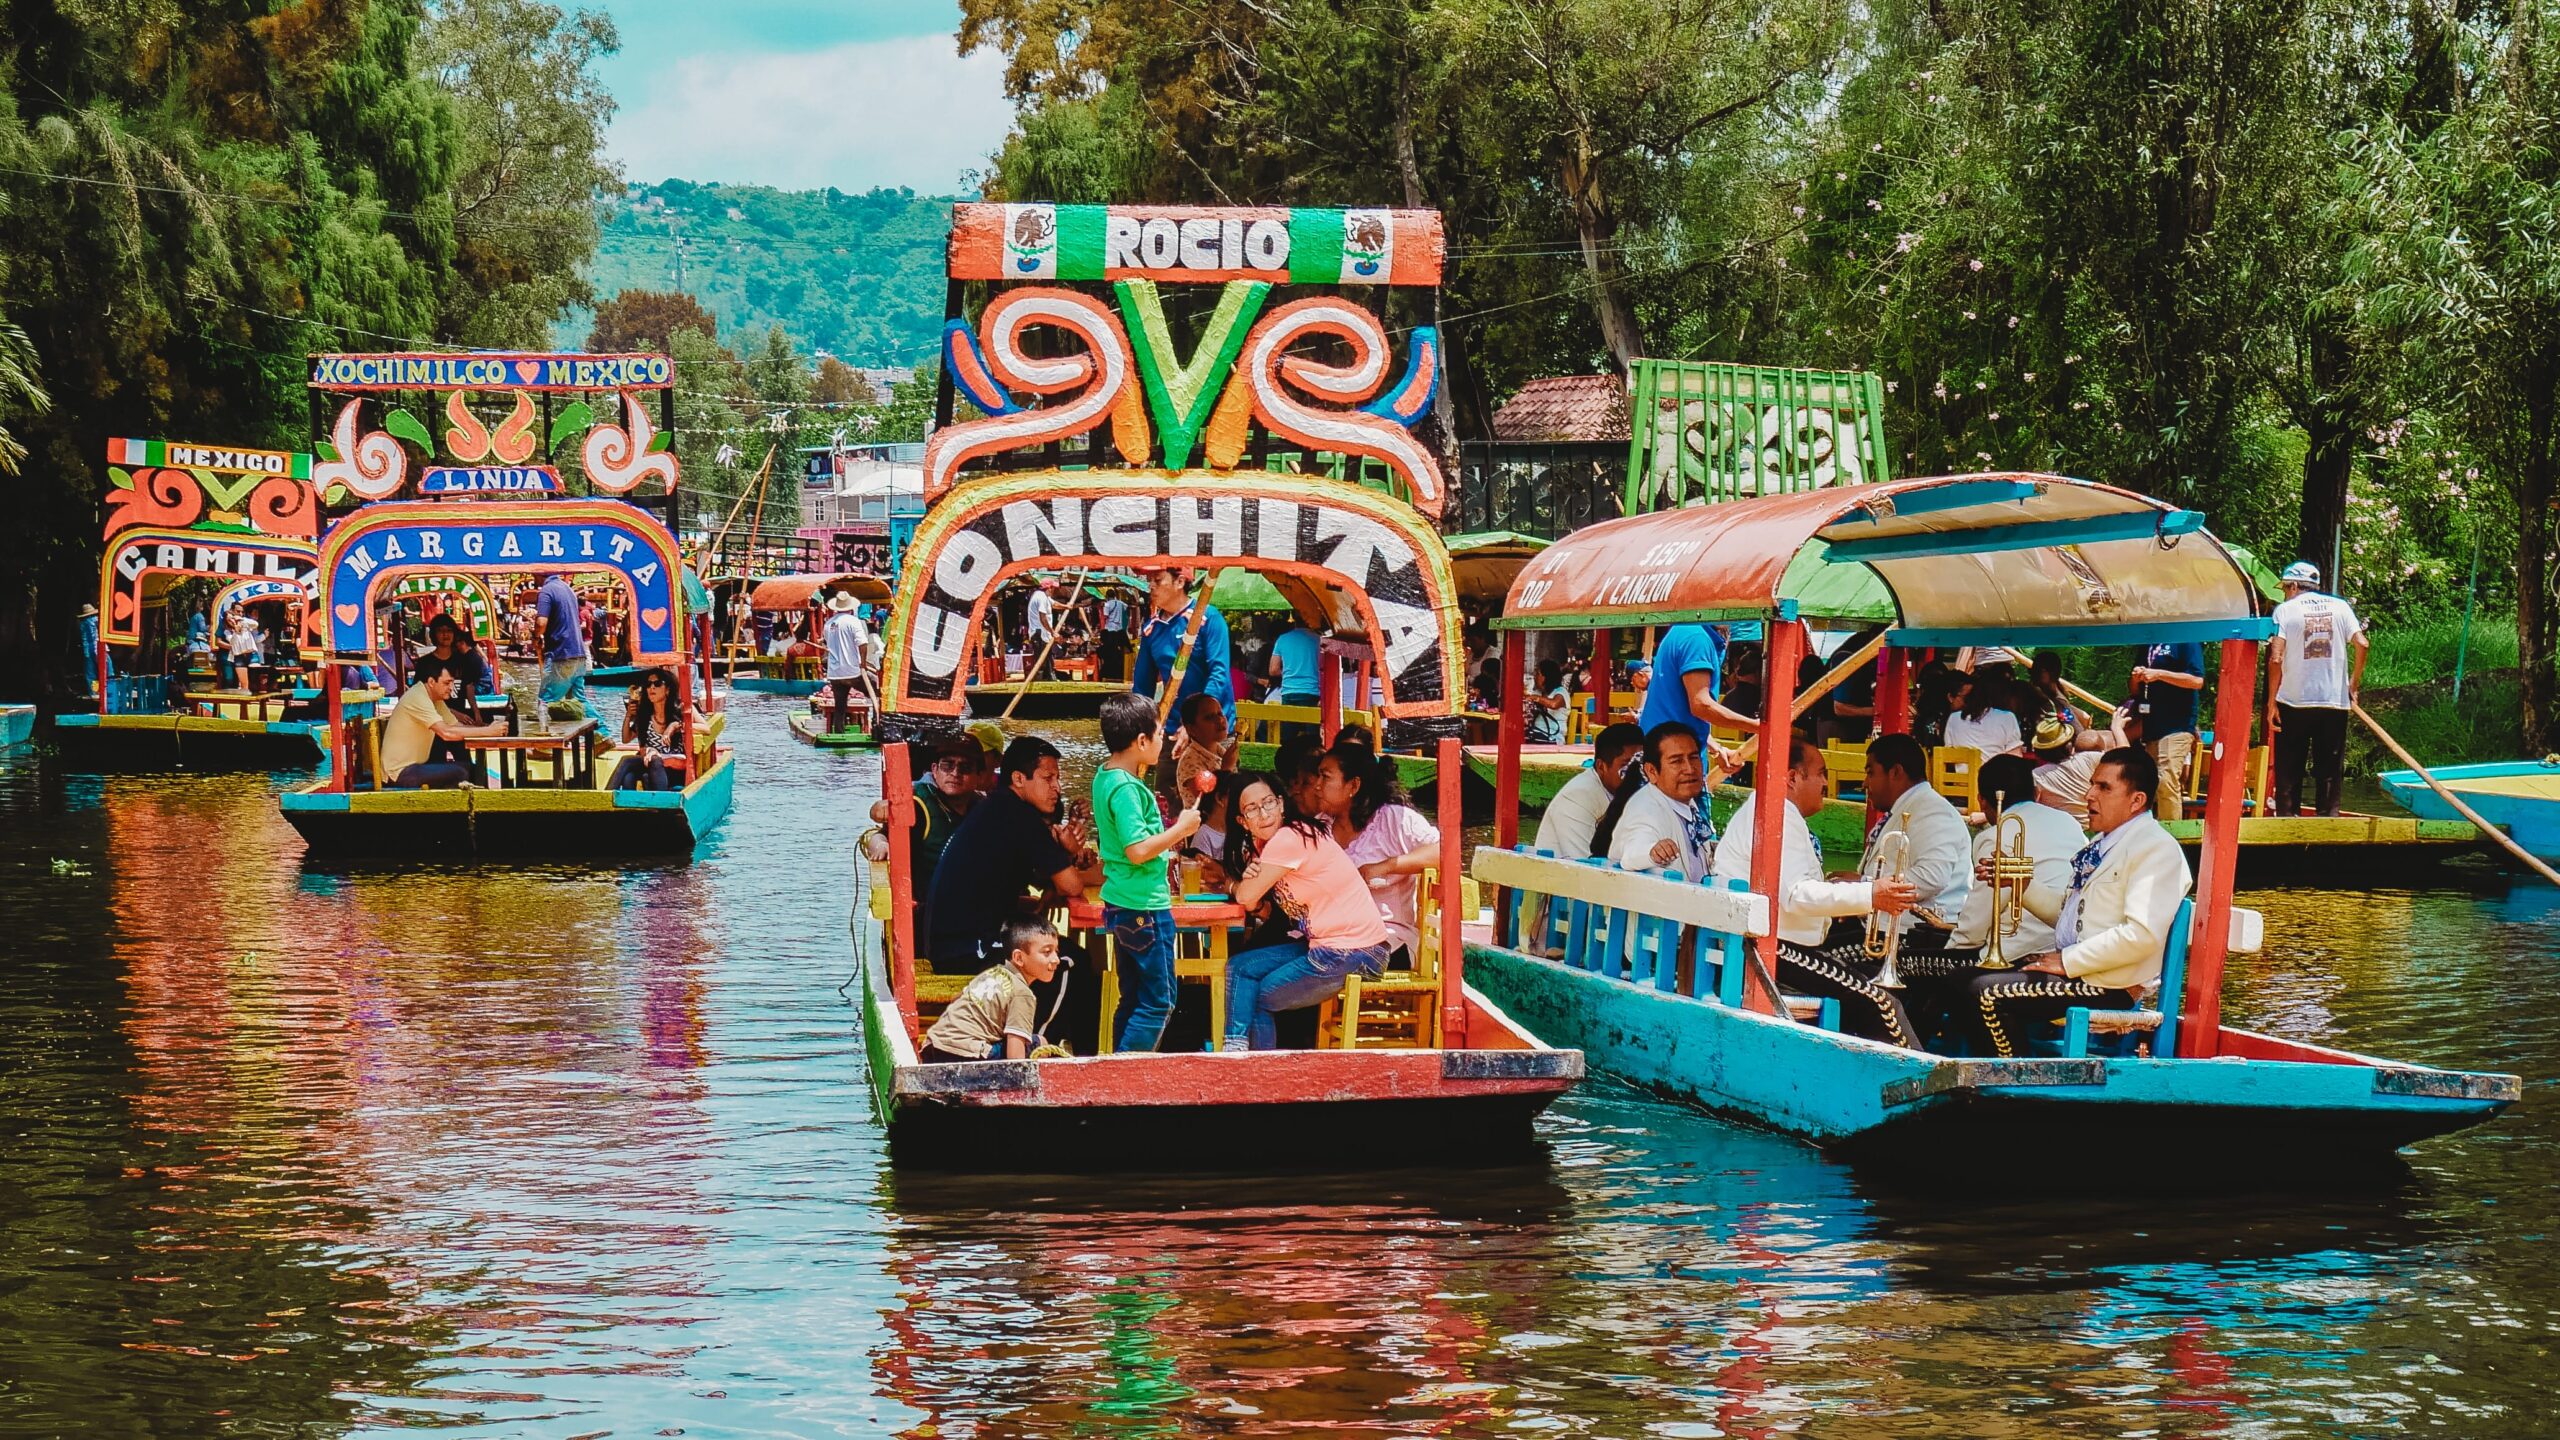 Xochimilco, CDMX, Mexico